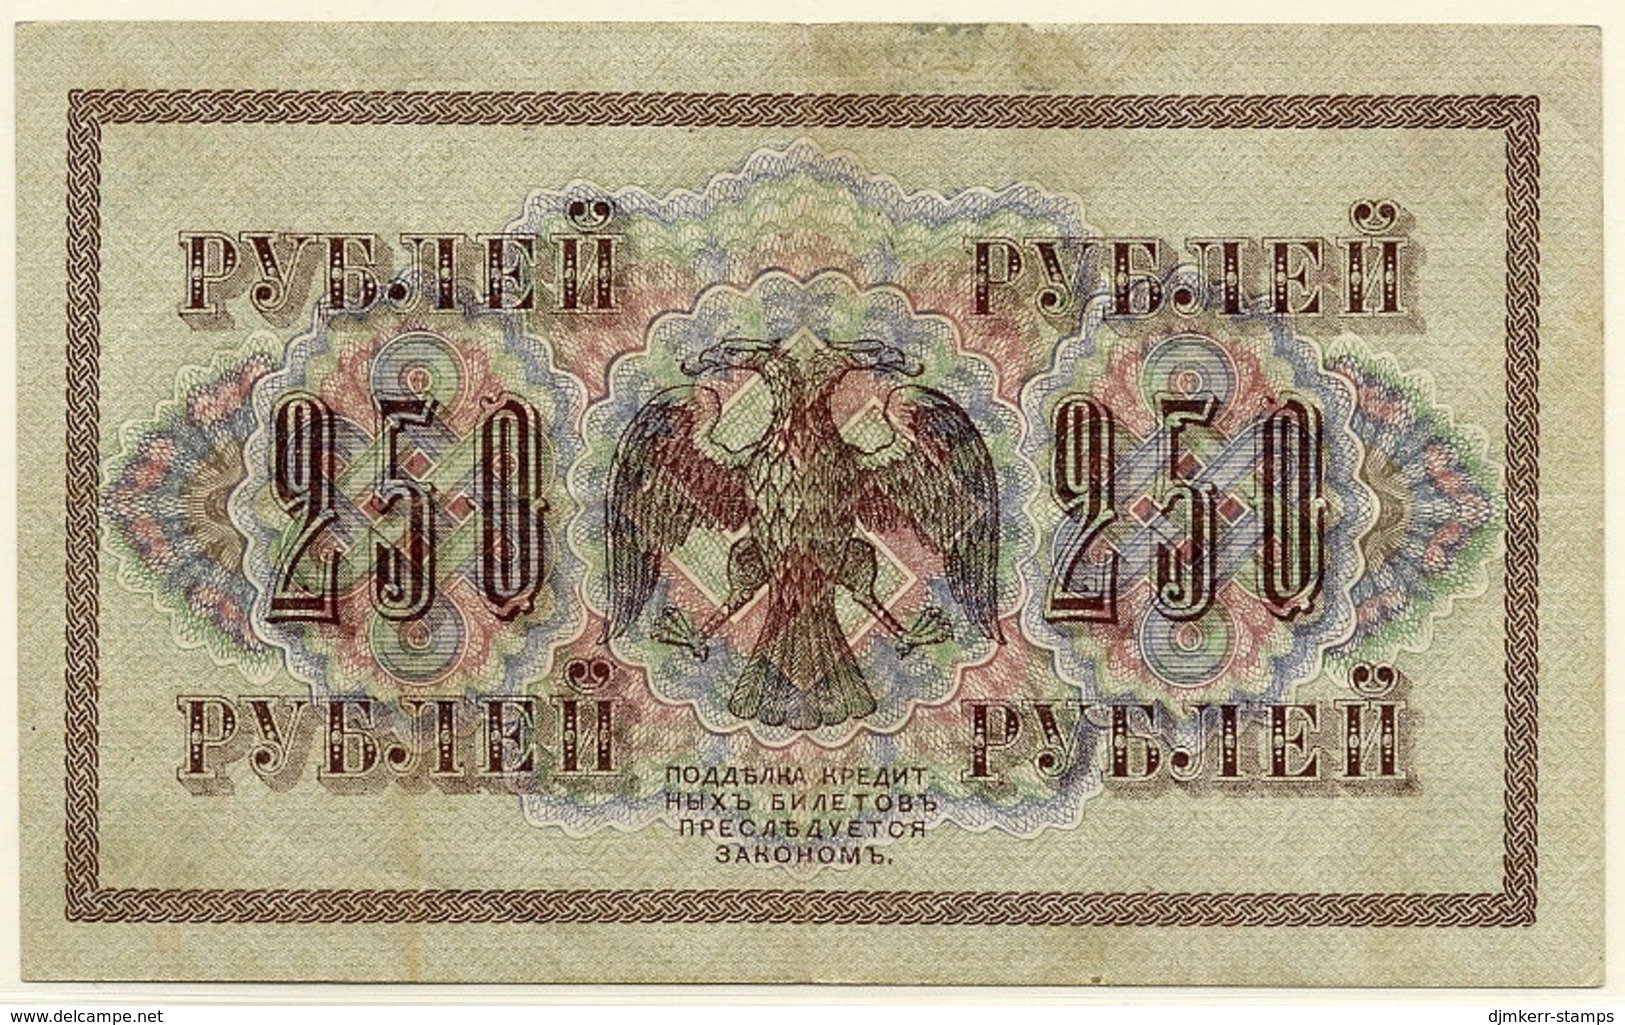 RUSSIA (Provisional Government) 1917 250 Rub. (Shipov/Gusev) VF  P36 - Russia